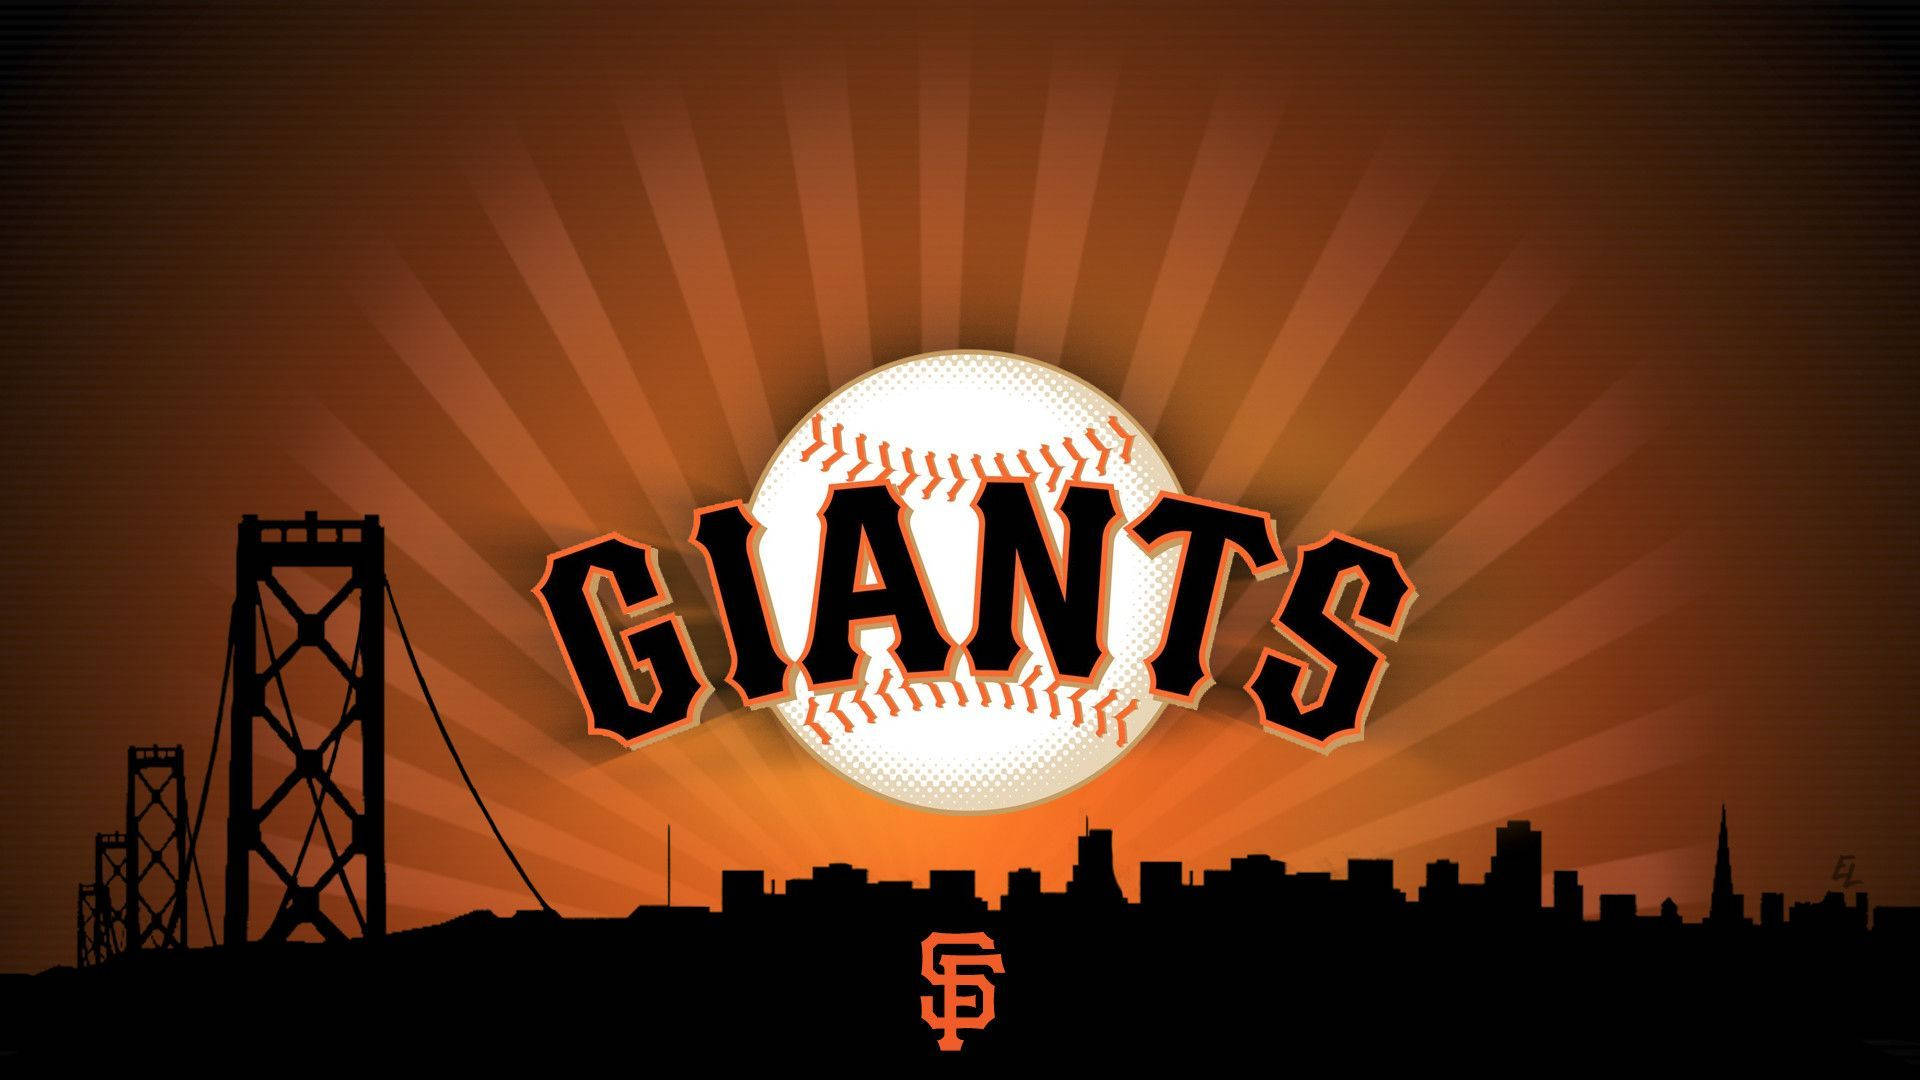 San Francisco Giants Emblem Illuminated Over The City Skyline Background